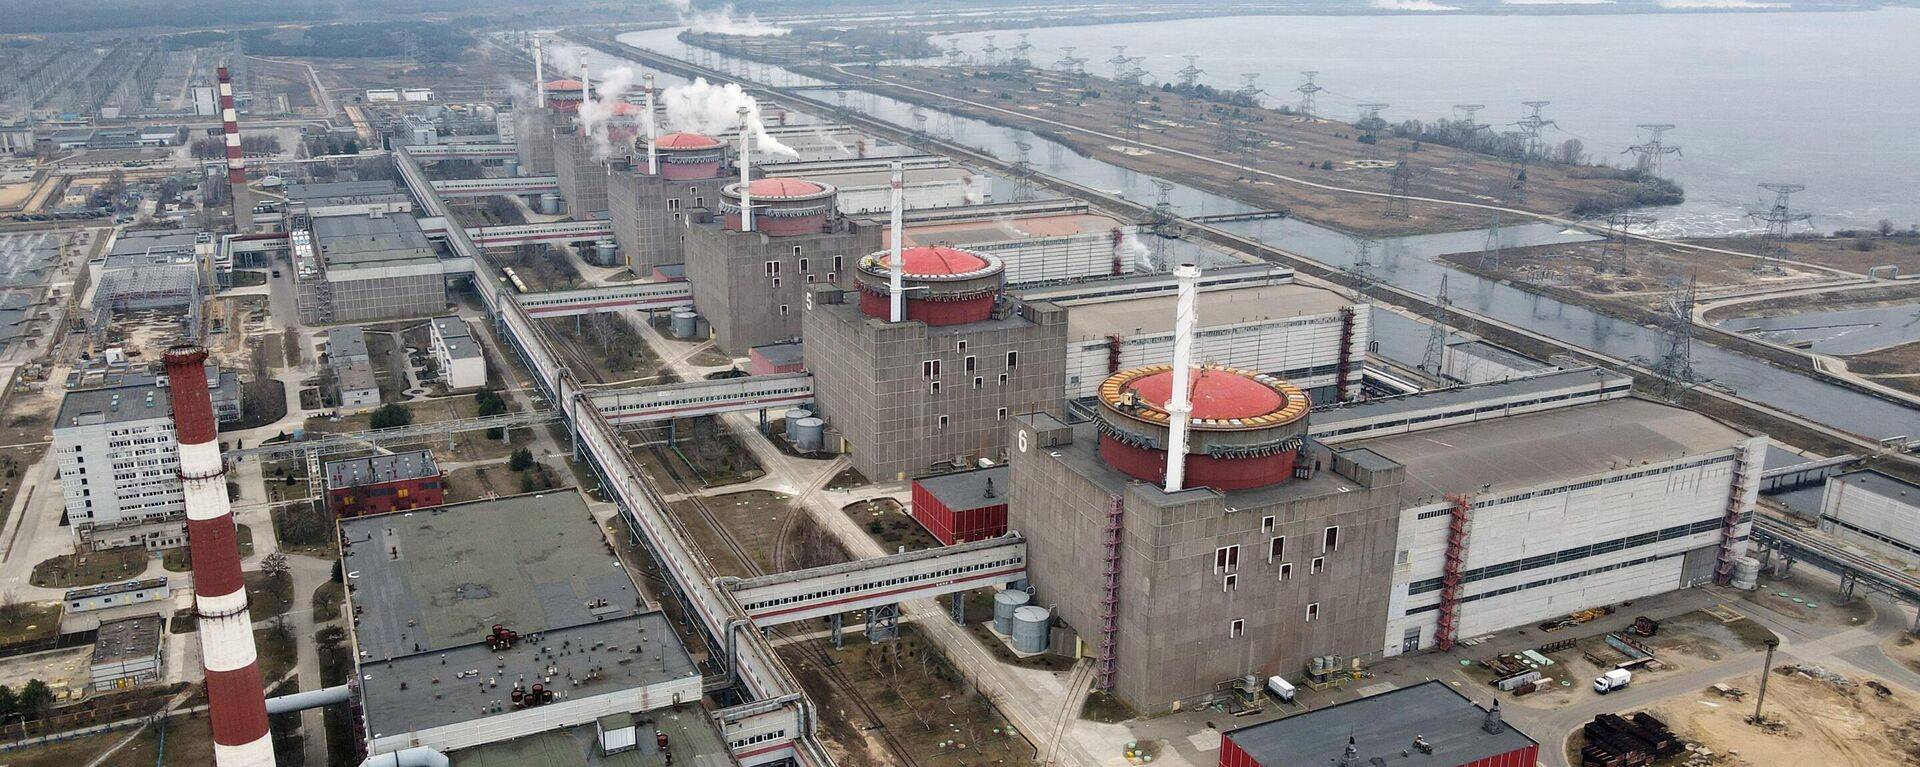 La planta nuclear de Zaporiyia - Sputnik Mundo, 1920, 24.10.2022